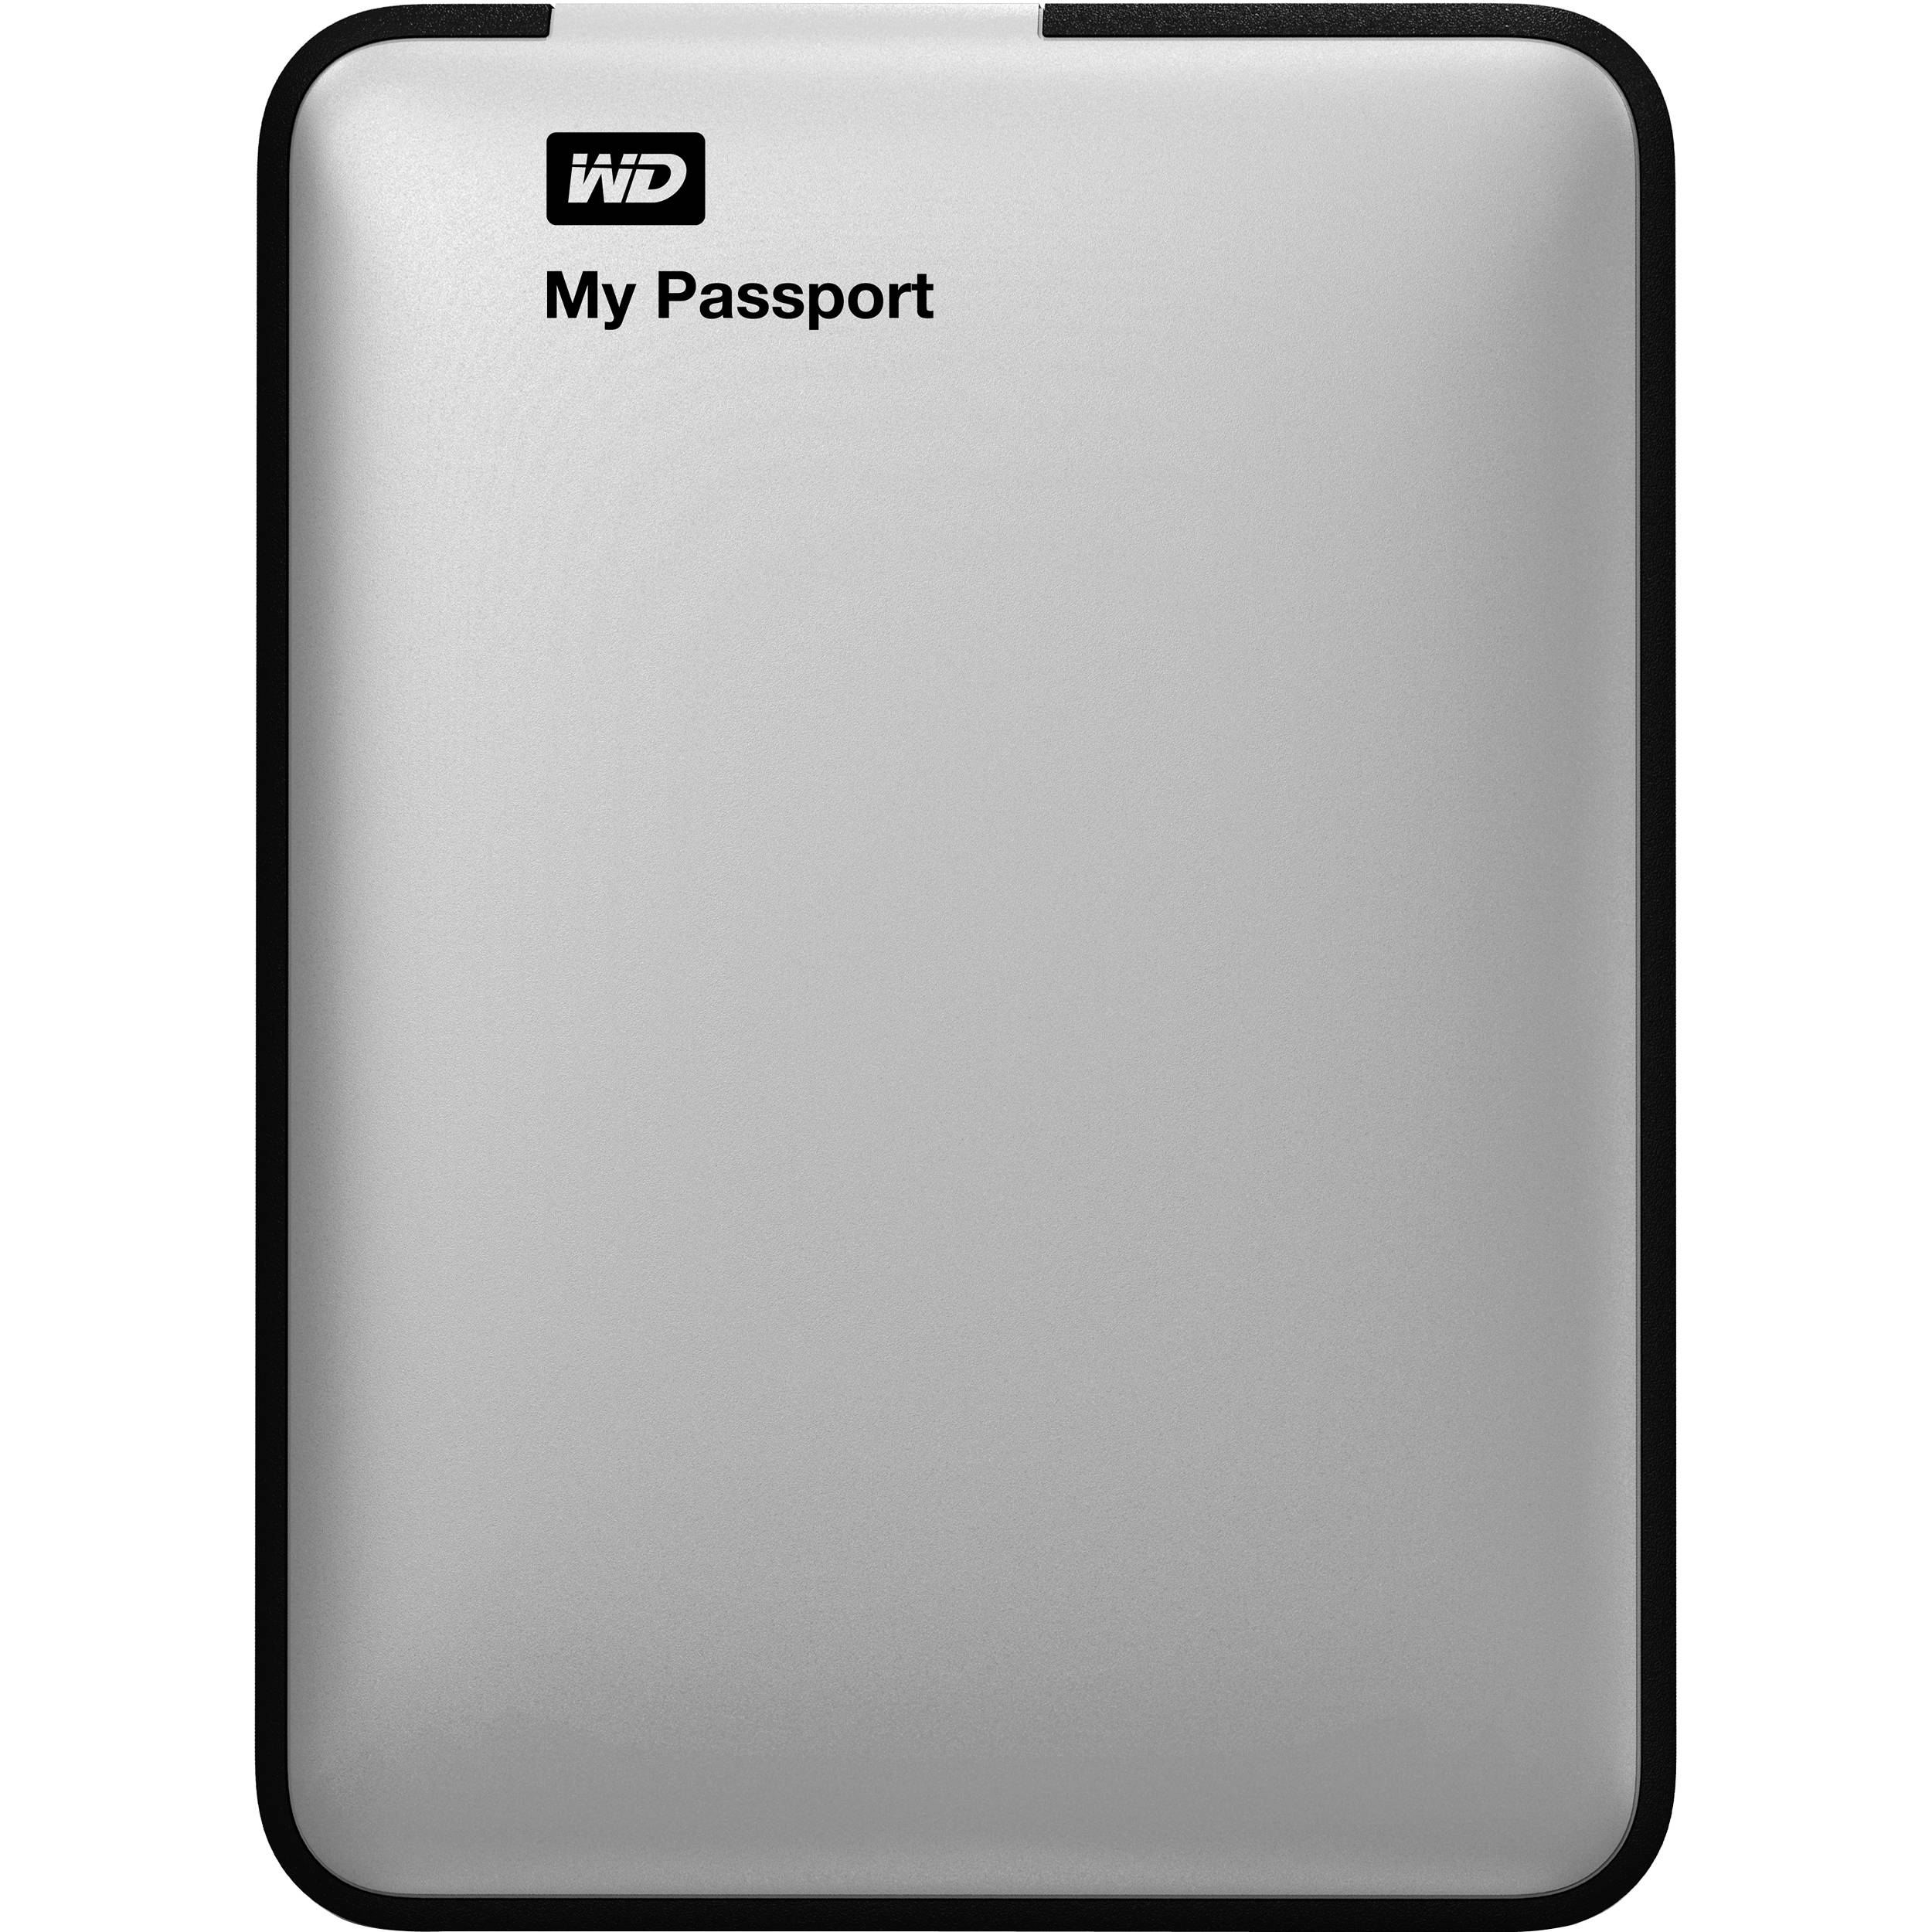 macbook external hard drive